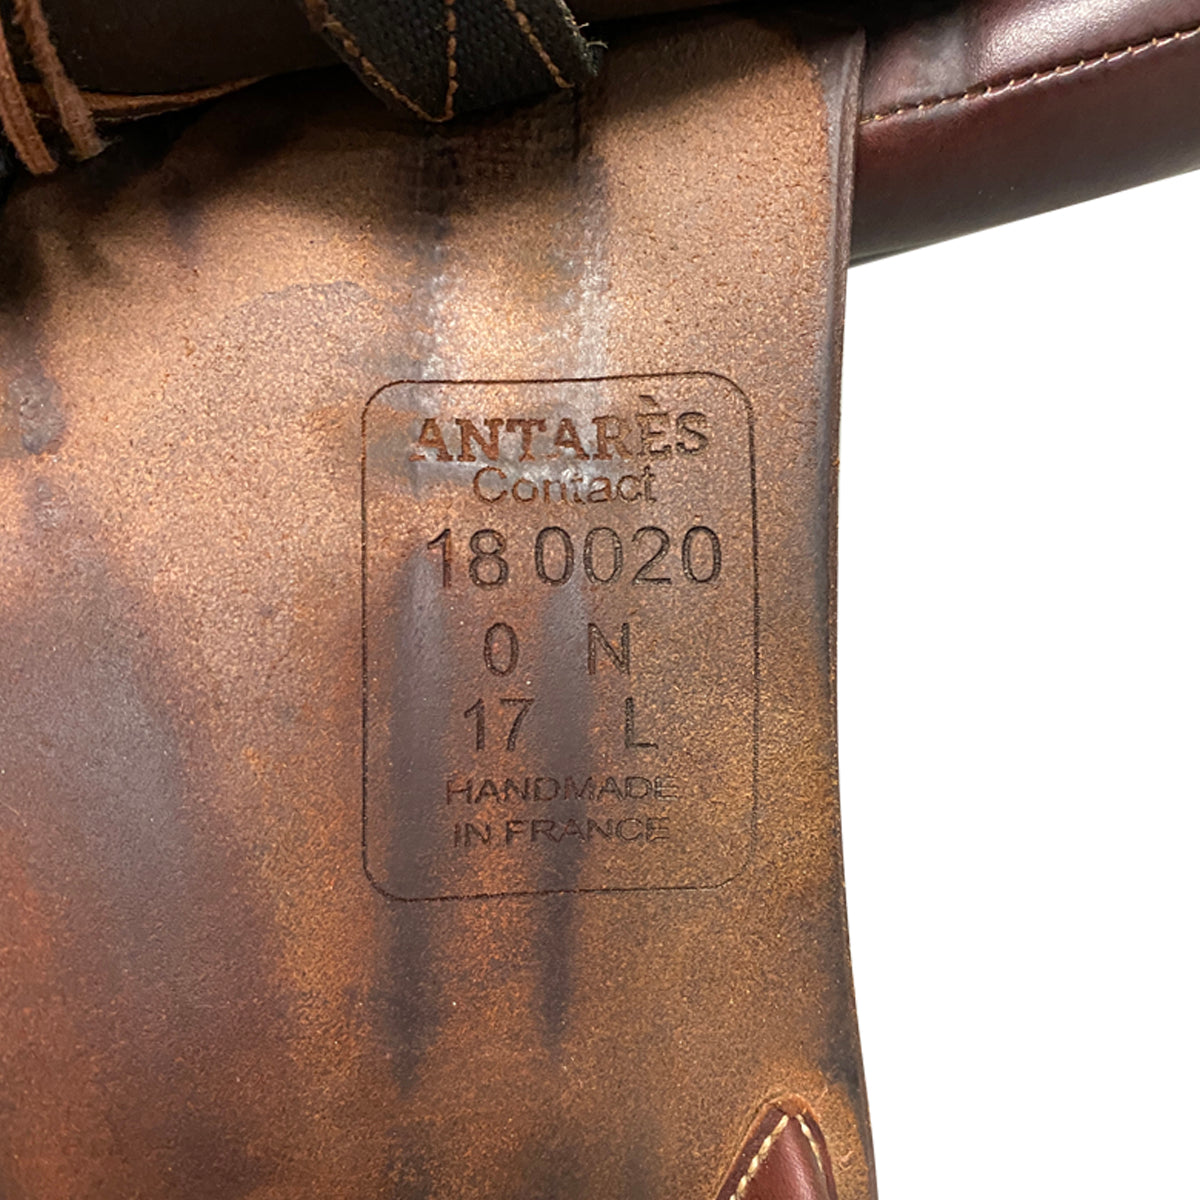 Antarés 2018 'Contact' Saddle in Brown